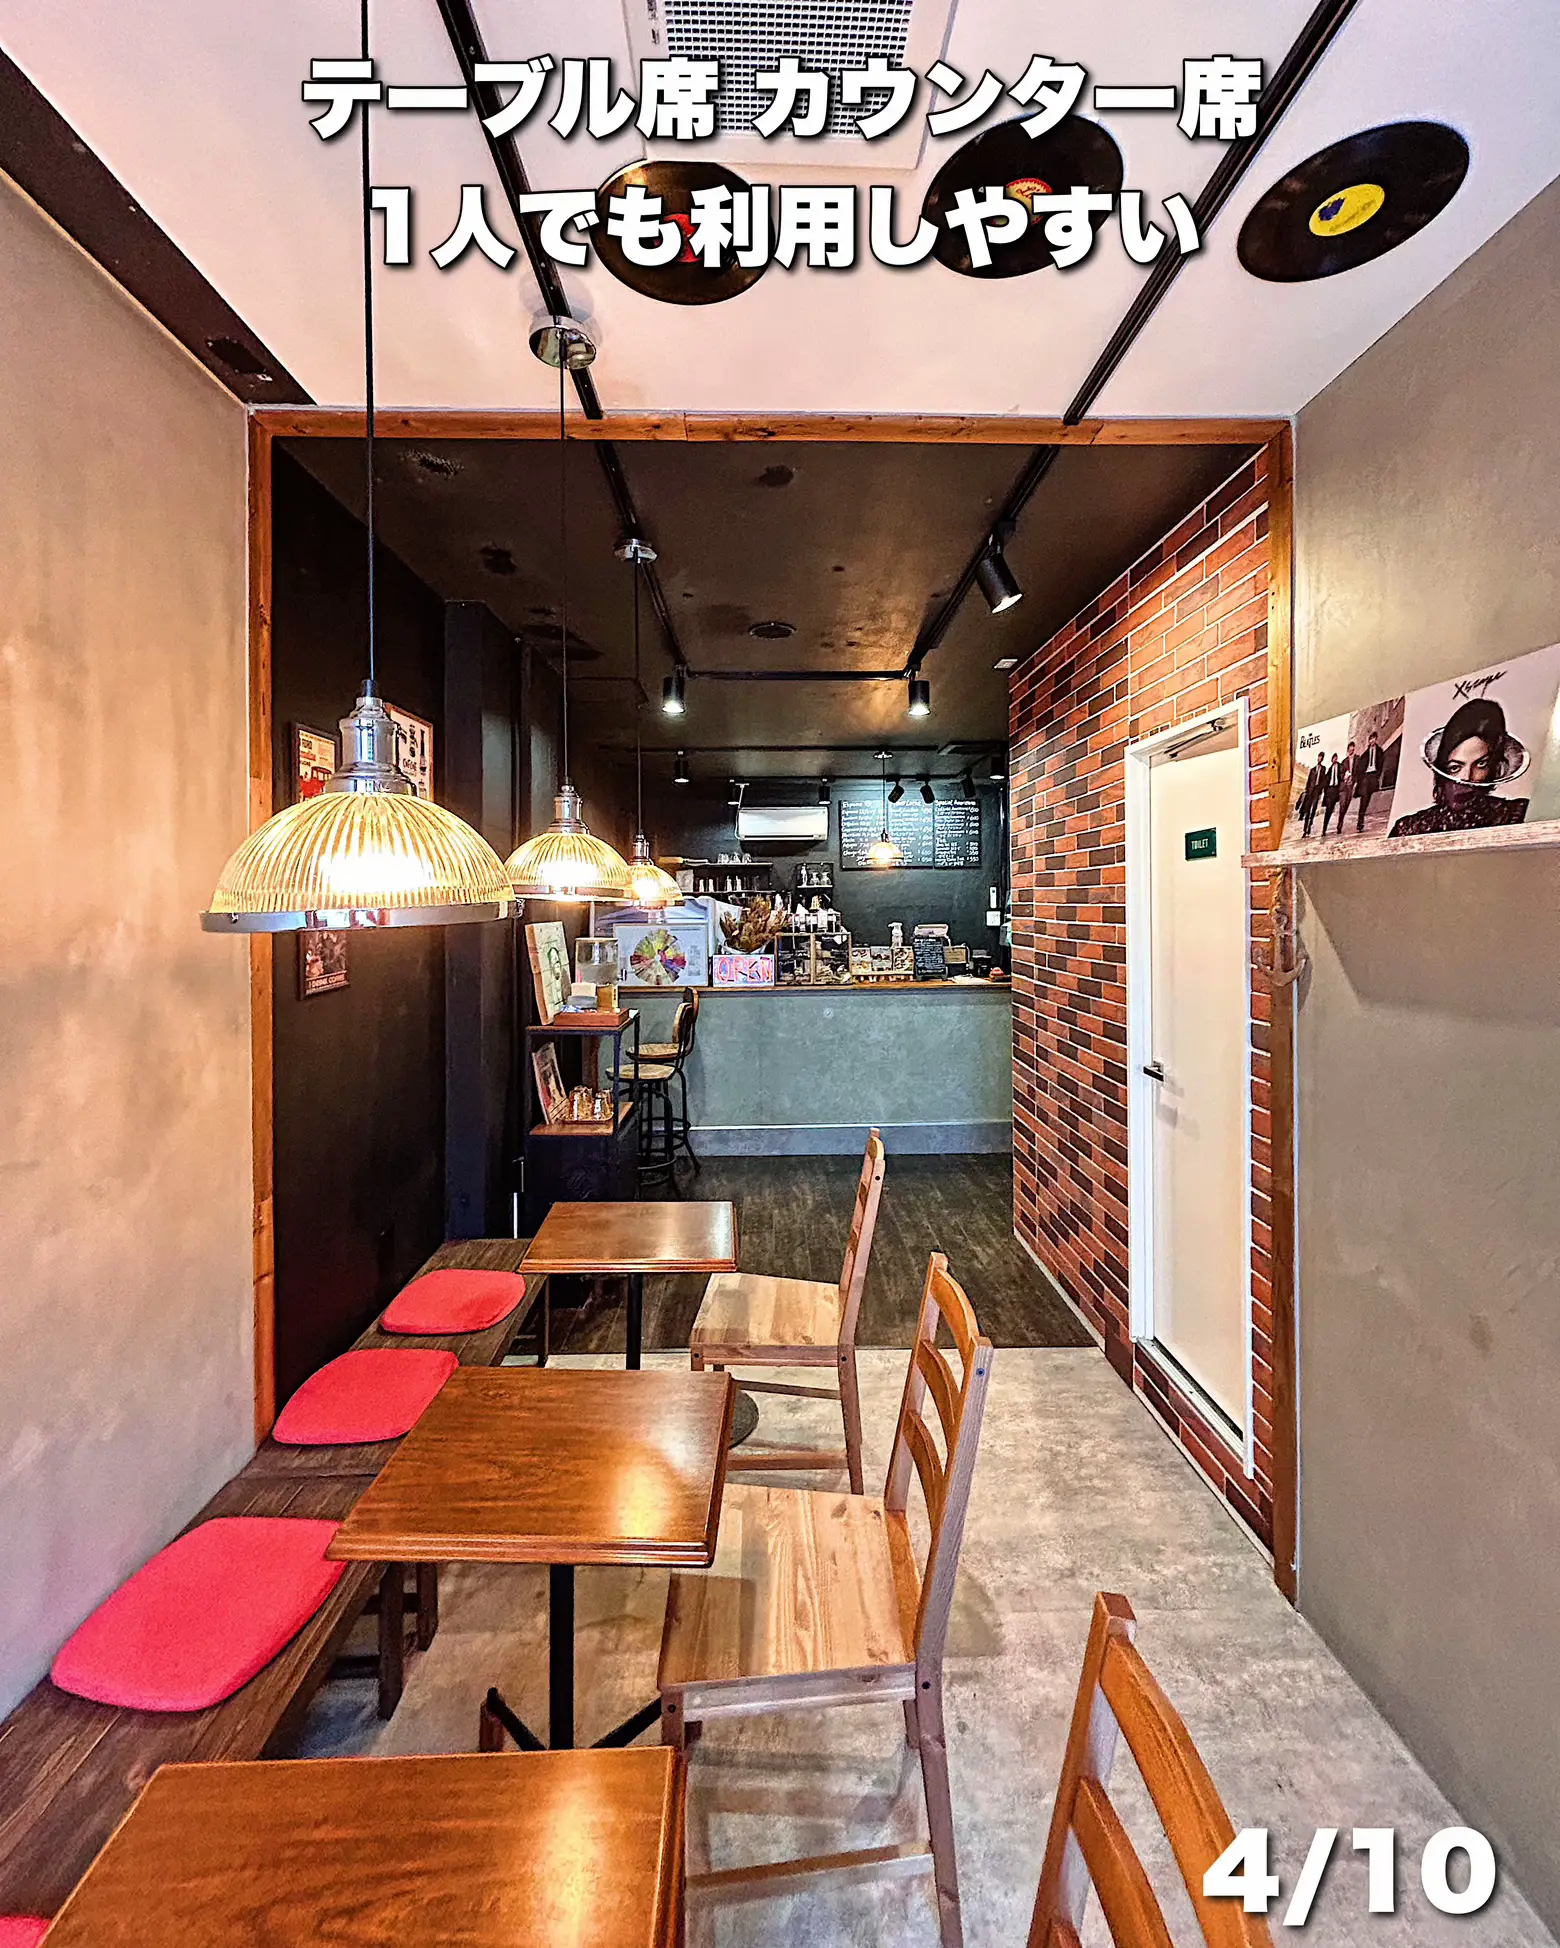 【新店情報】堀江に西海岸風ヴィンテージカフェがOPEN!! 居心地もよく1人でも利用しやすい☝️☕️の画像 (3枚目)